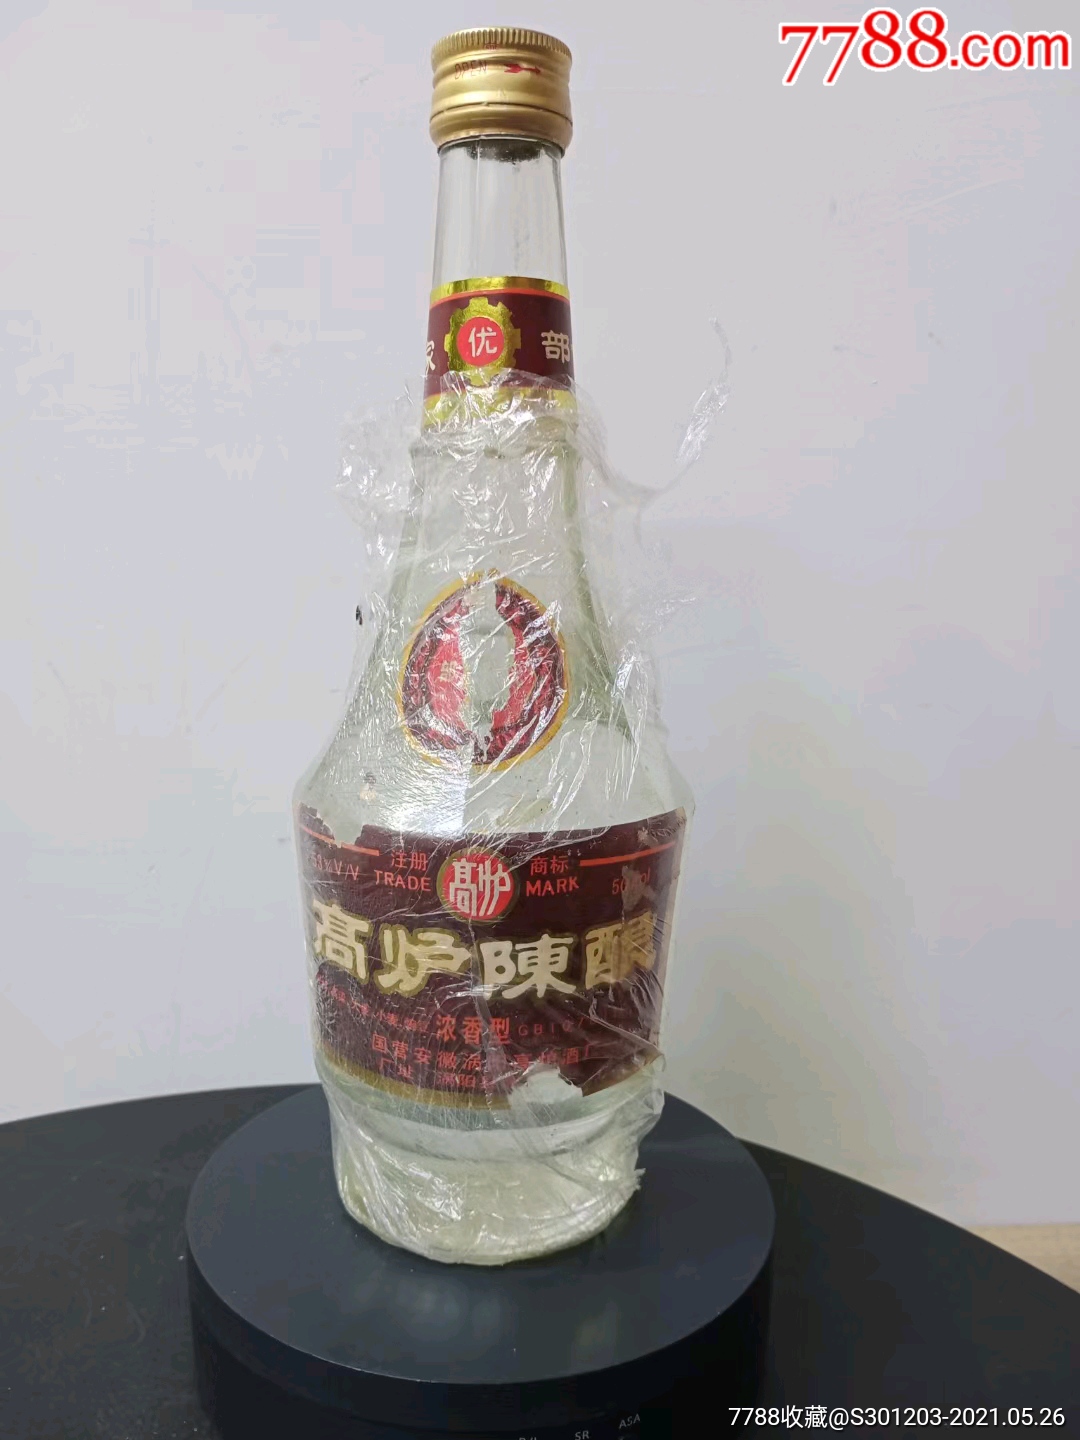 1991年53度高炉陈酿,中国优质酒